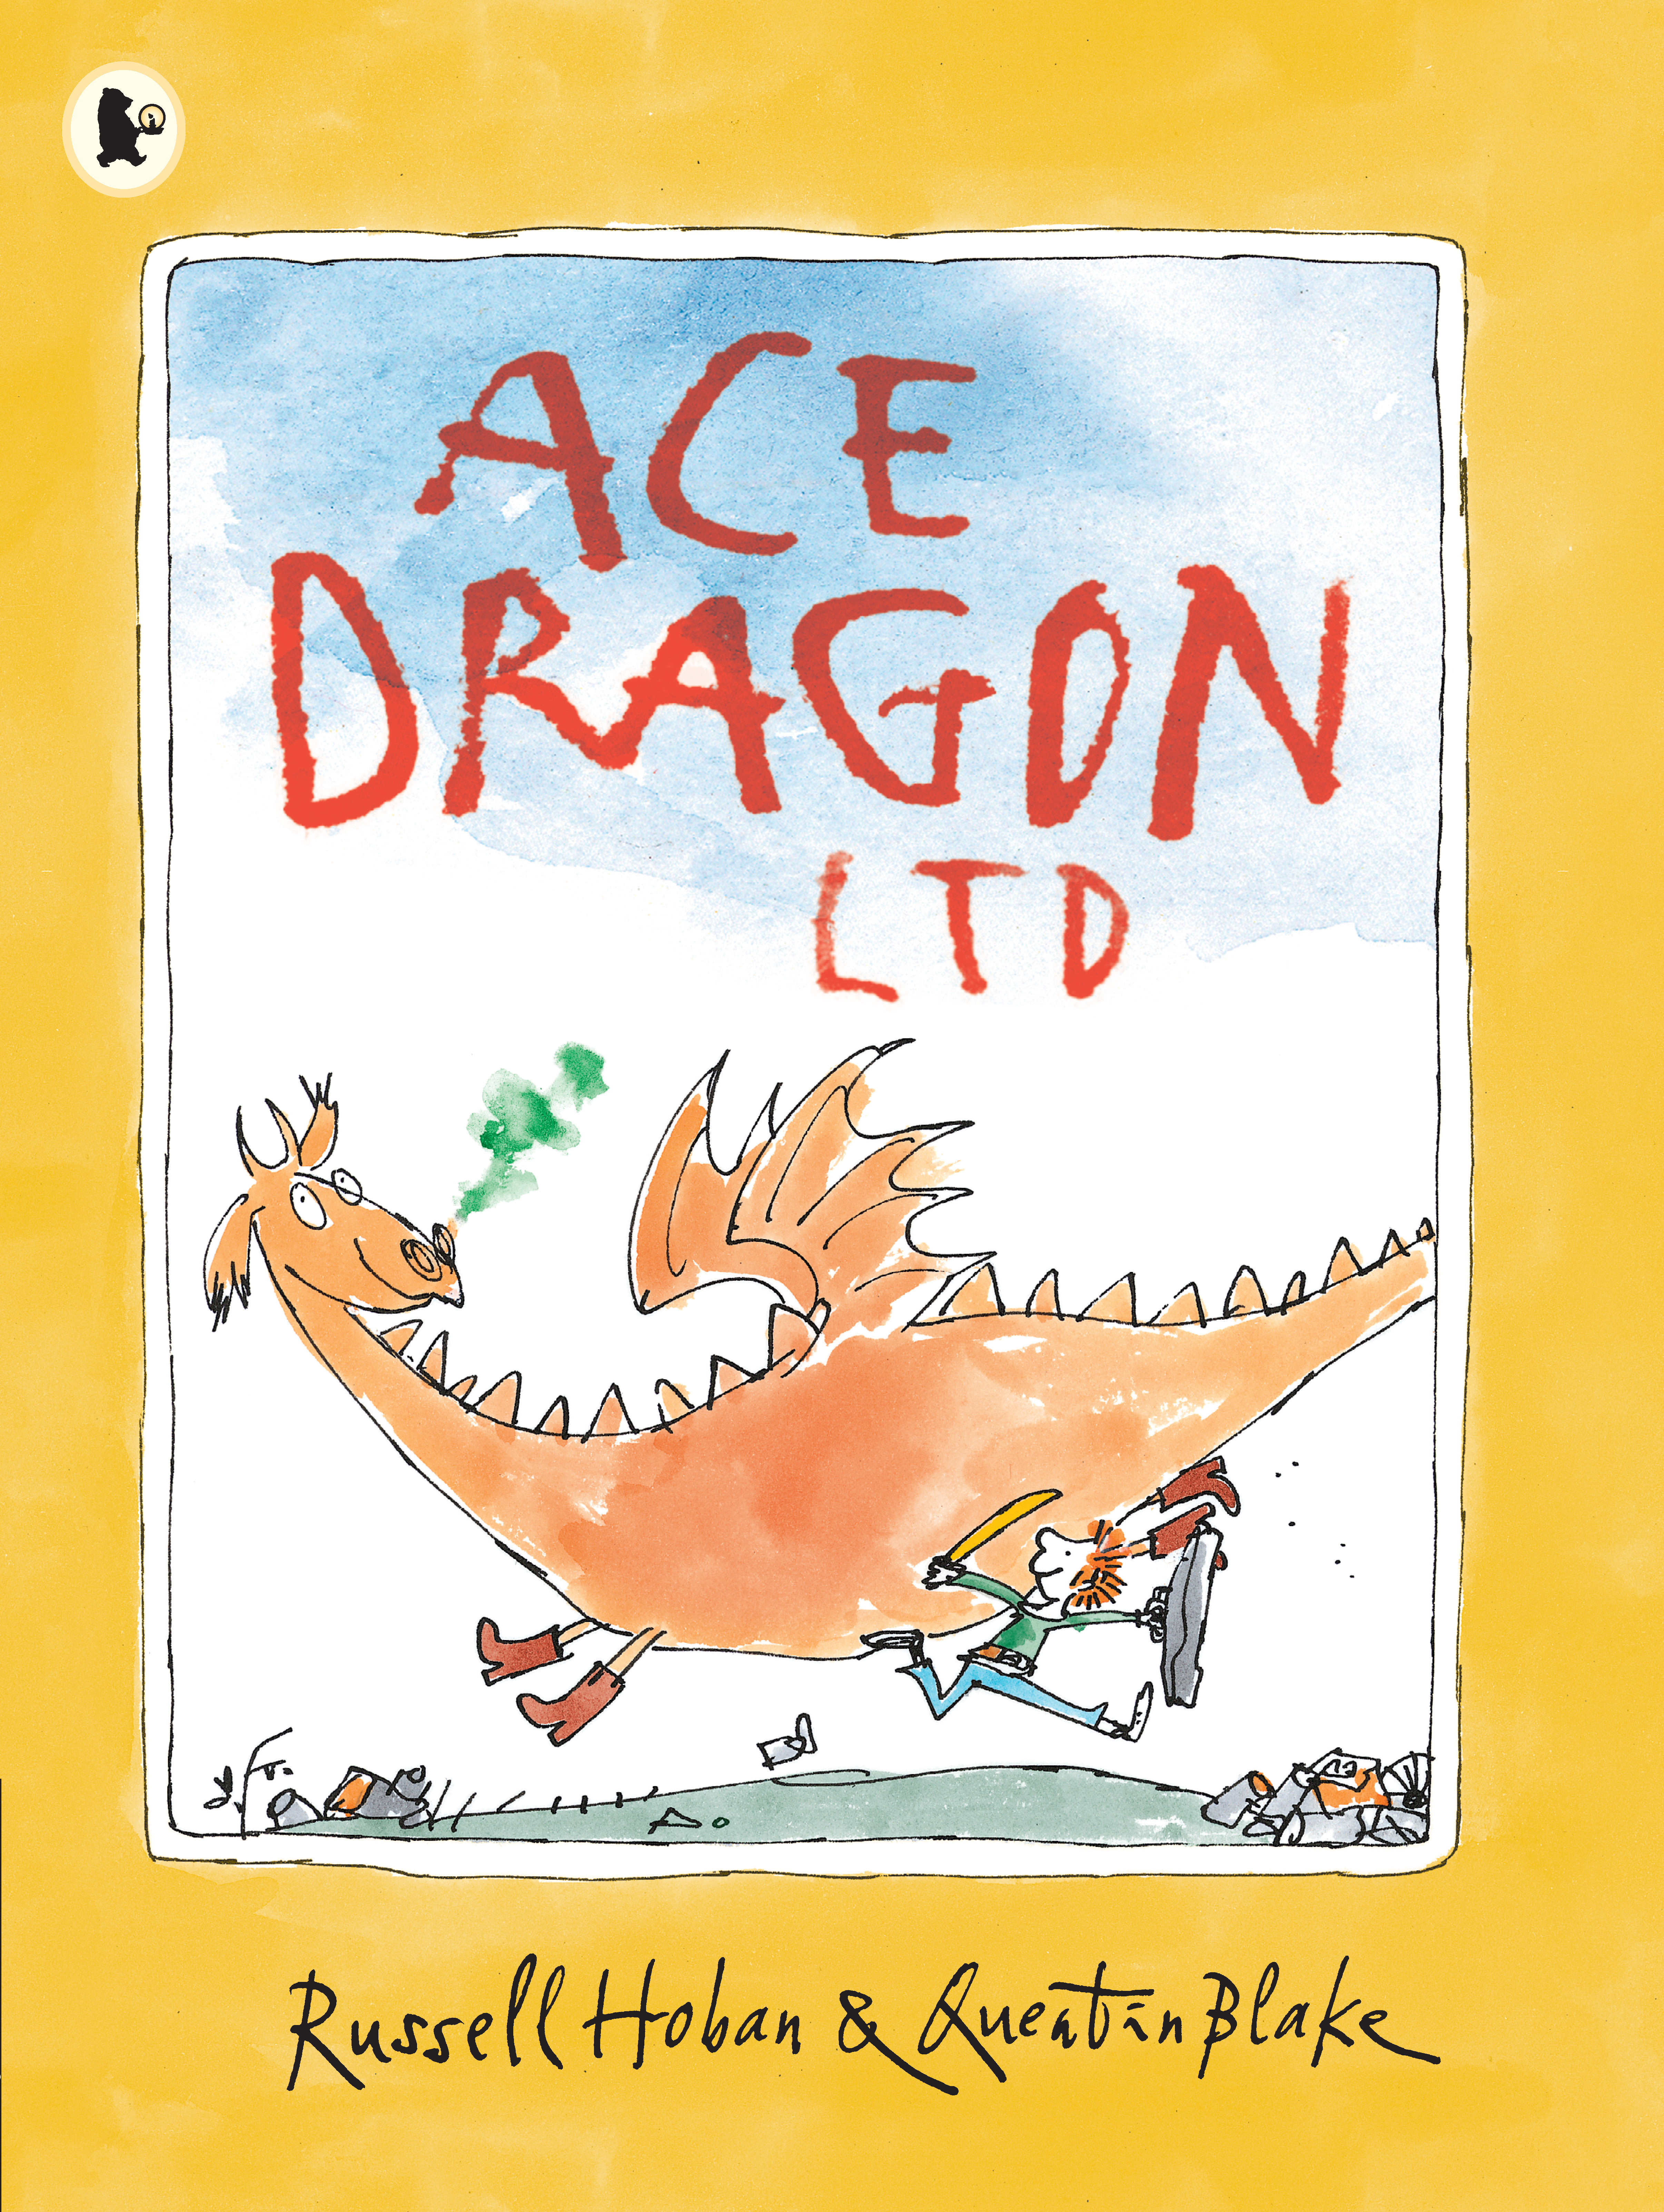 Ace-Dragon-Ltd